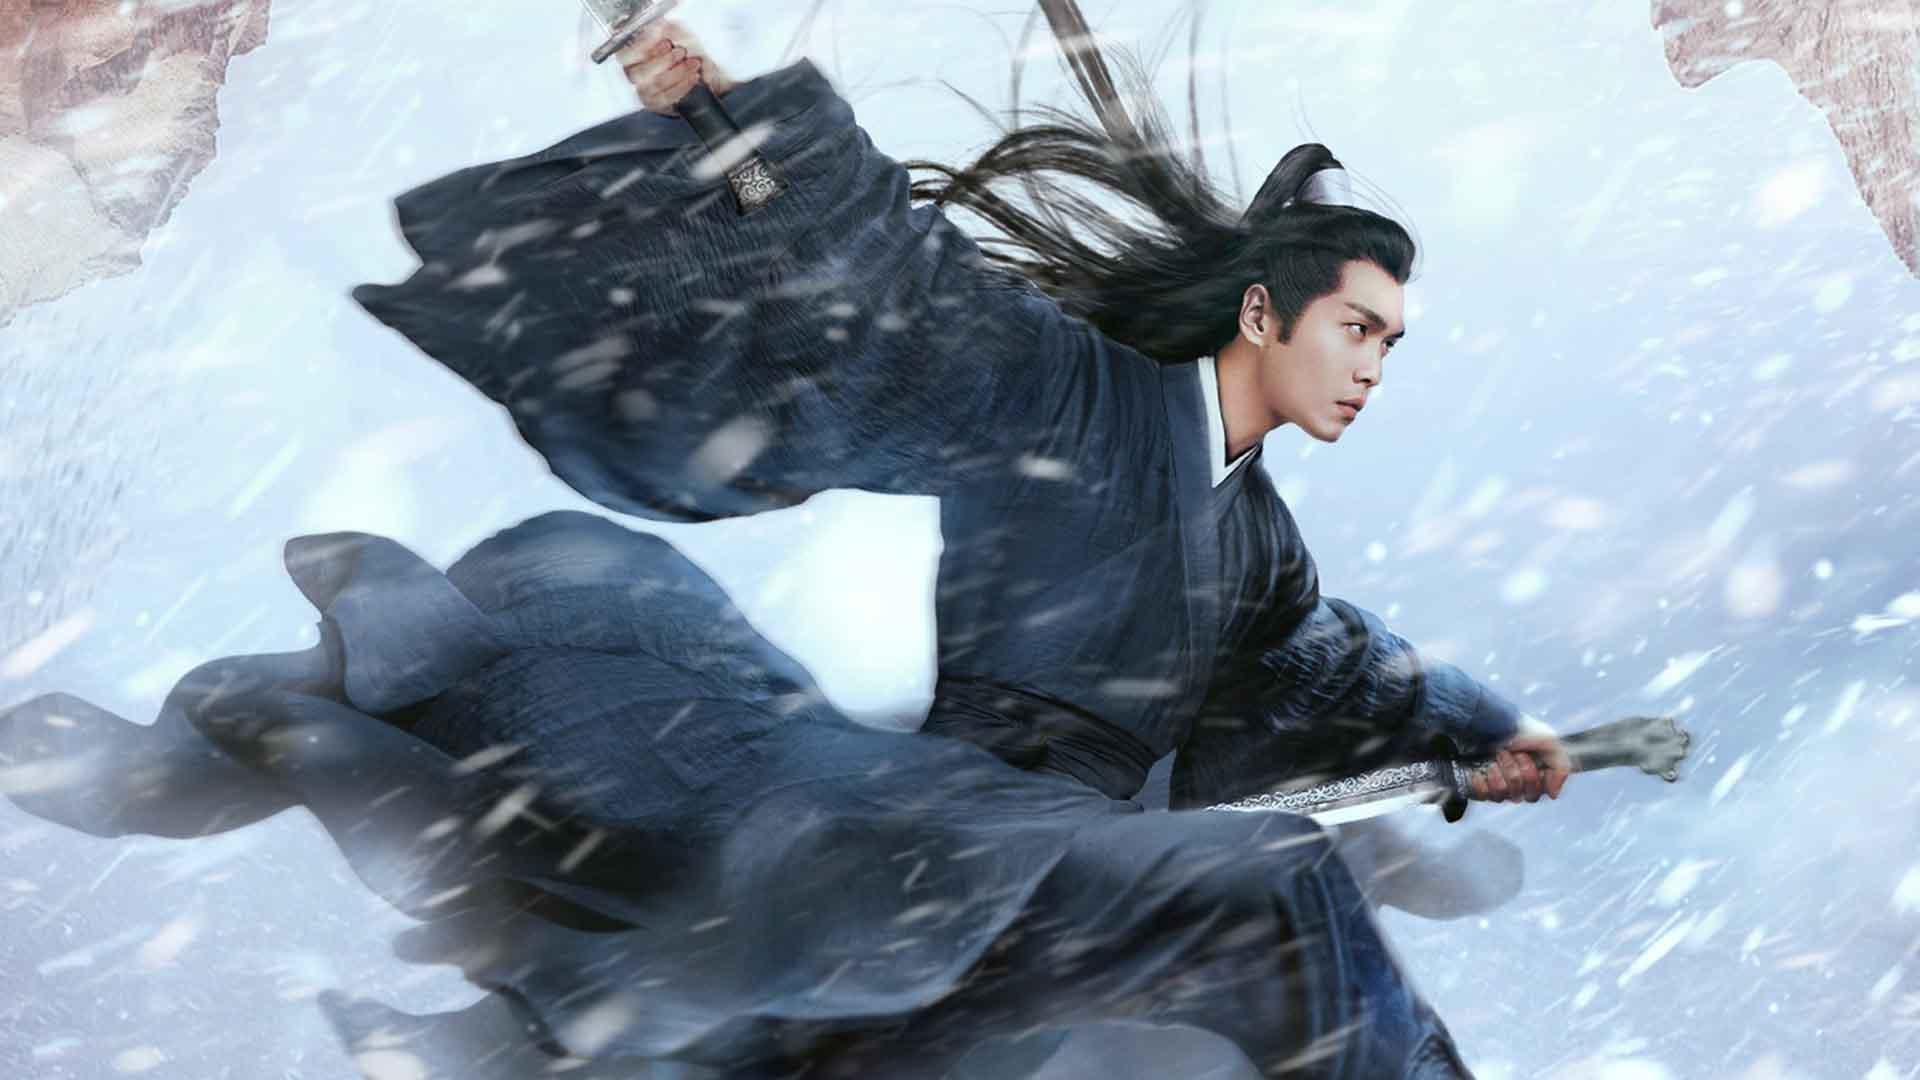 بازیگر اصلی سریال Sword Snow Stride با دو شمشیر در میان برف